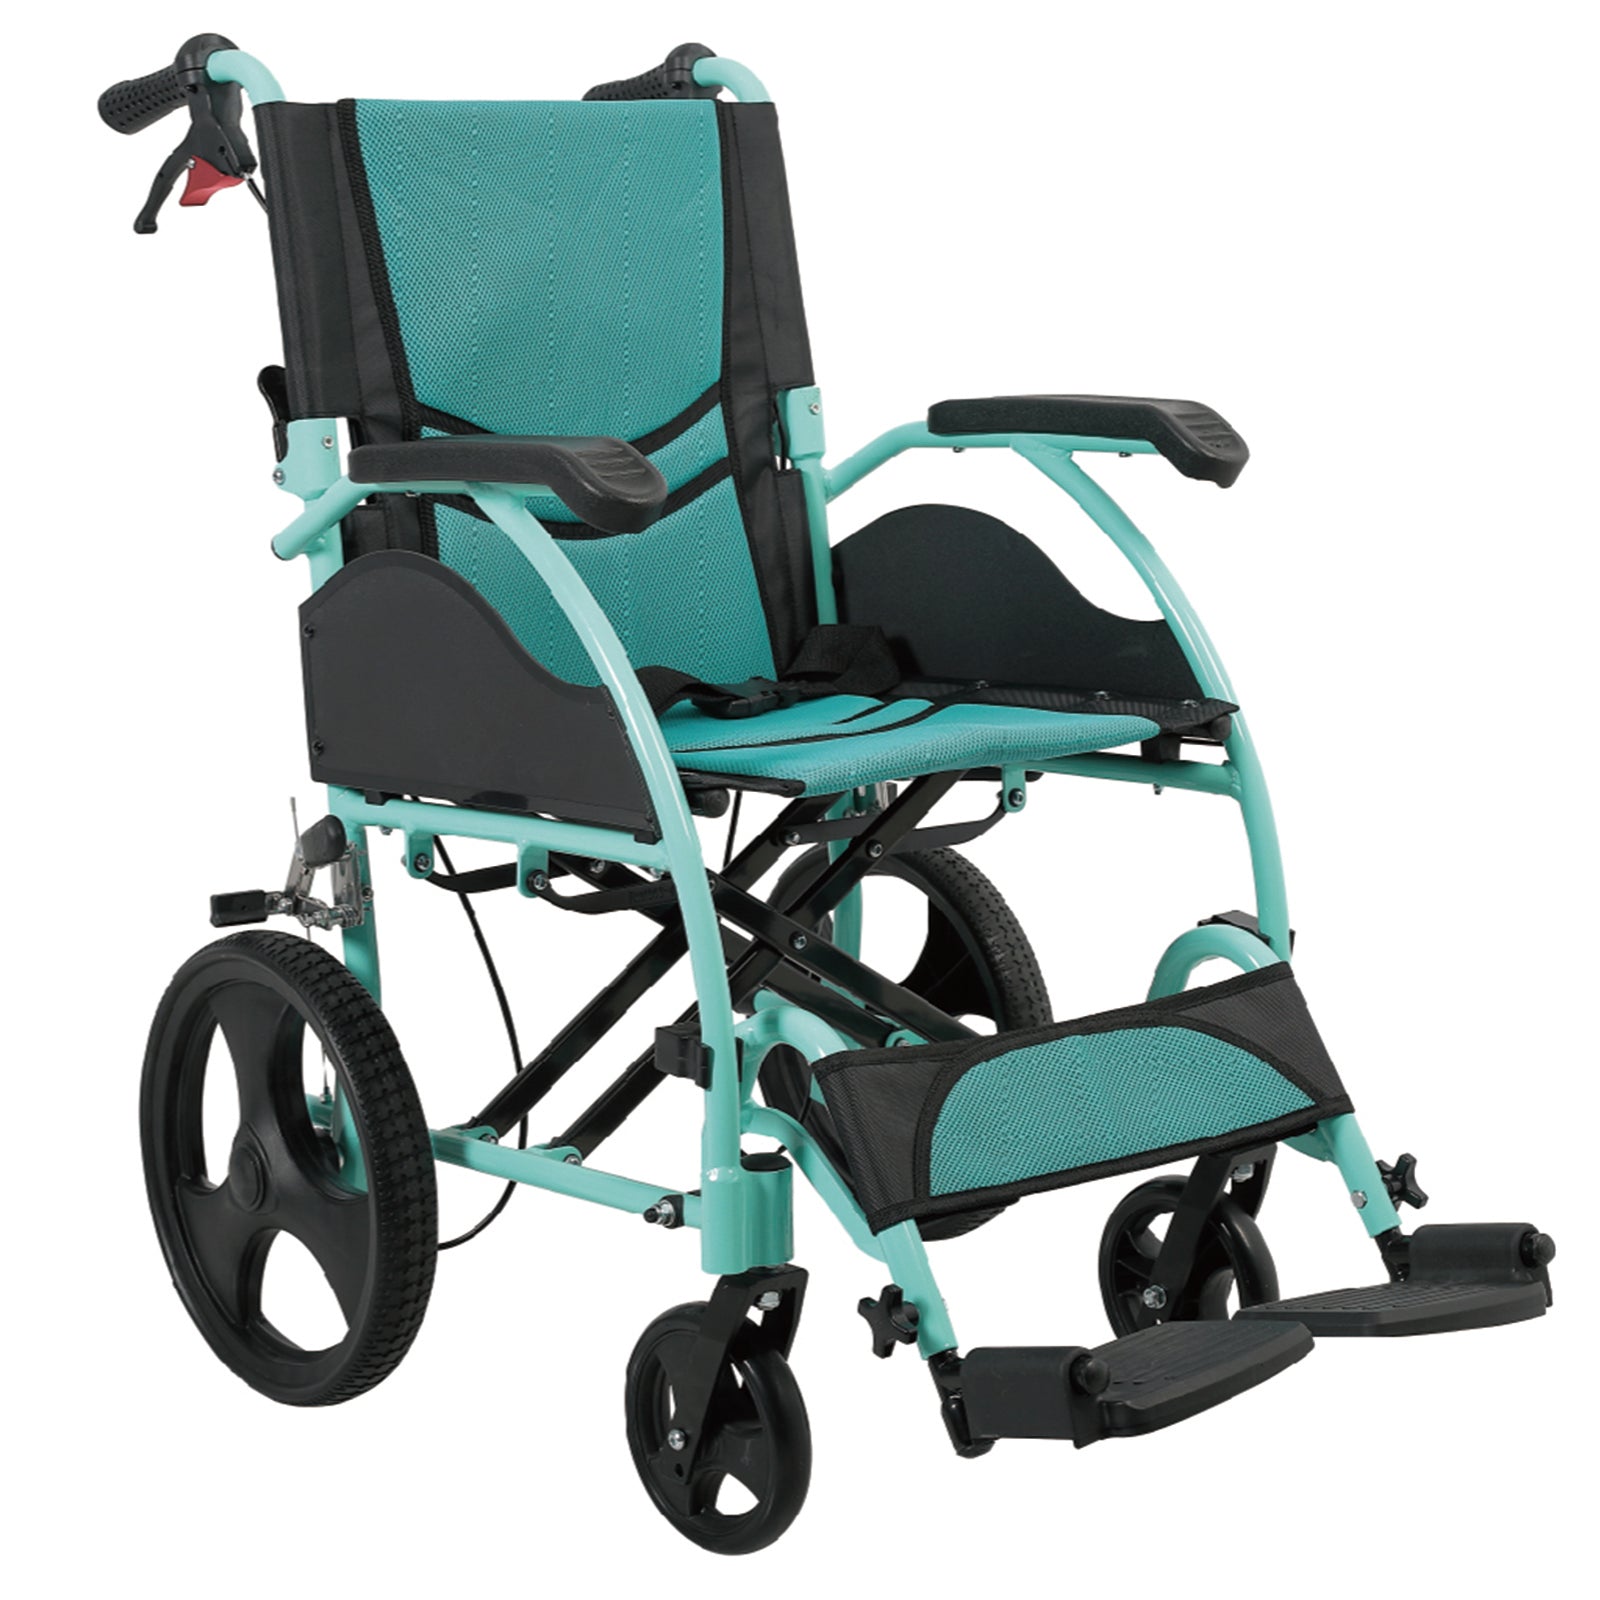 Care-Parents 介助用車椅子 折りたたみ車椅子 背折れタイプ アルミ製 折りたたみ軽量 組立不要 (CP-863BS)